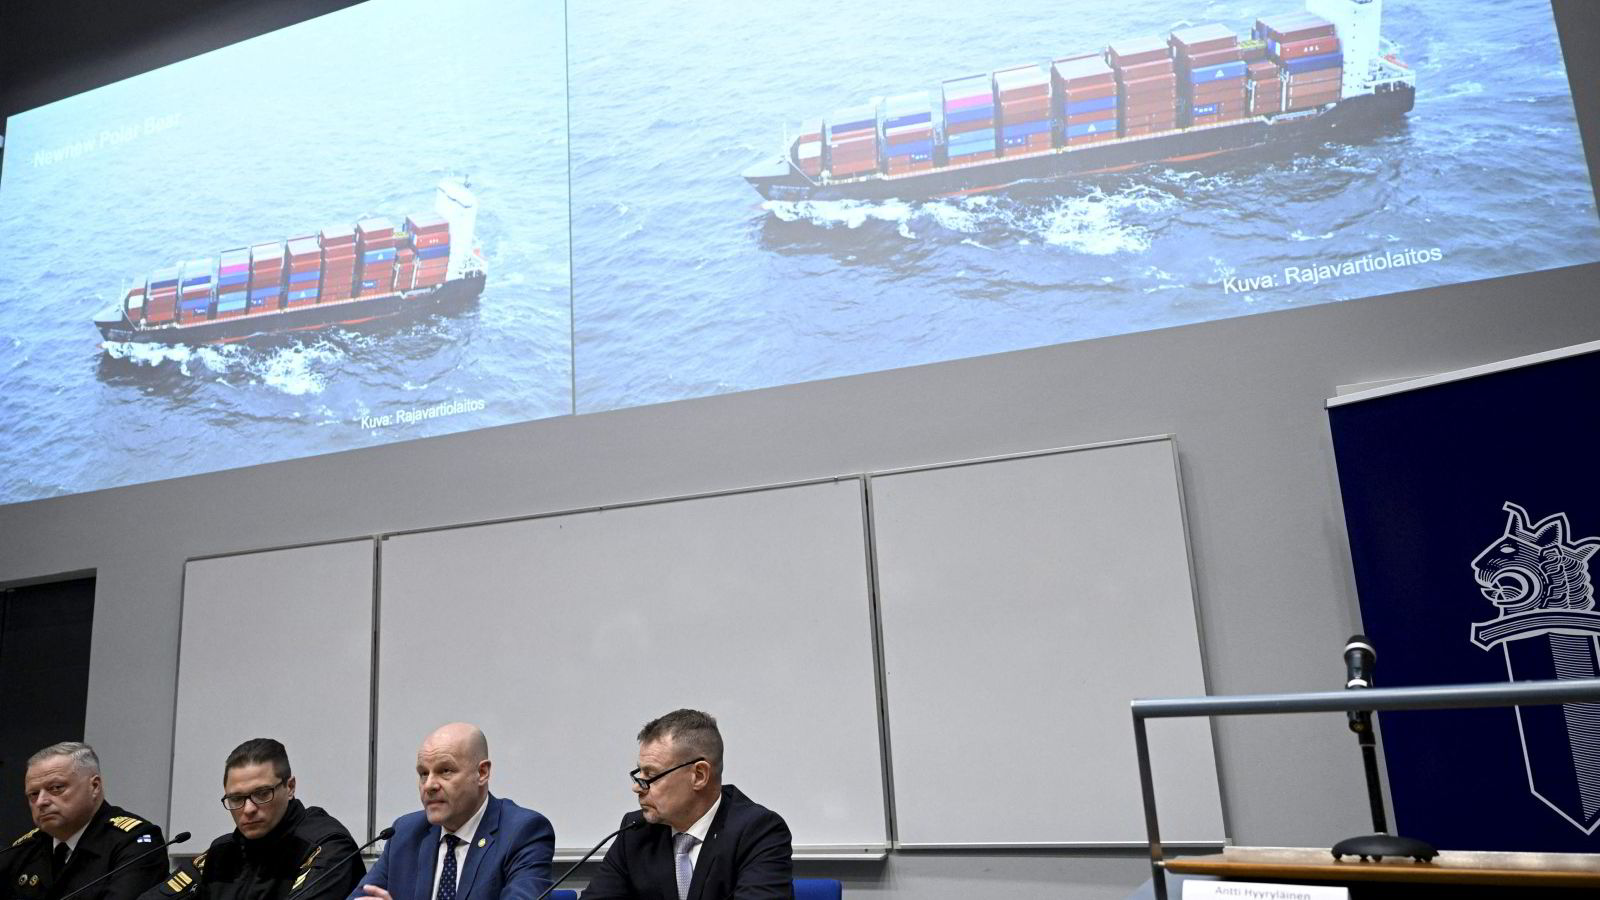 Det russisk-kinesiske samarbeidet kan være mer alvorlig for Norge enn du tror